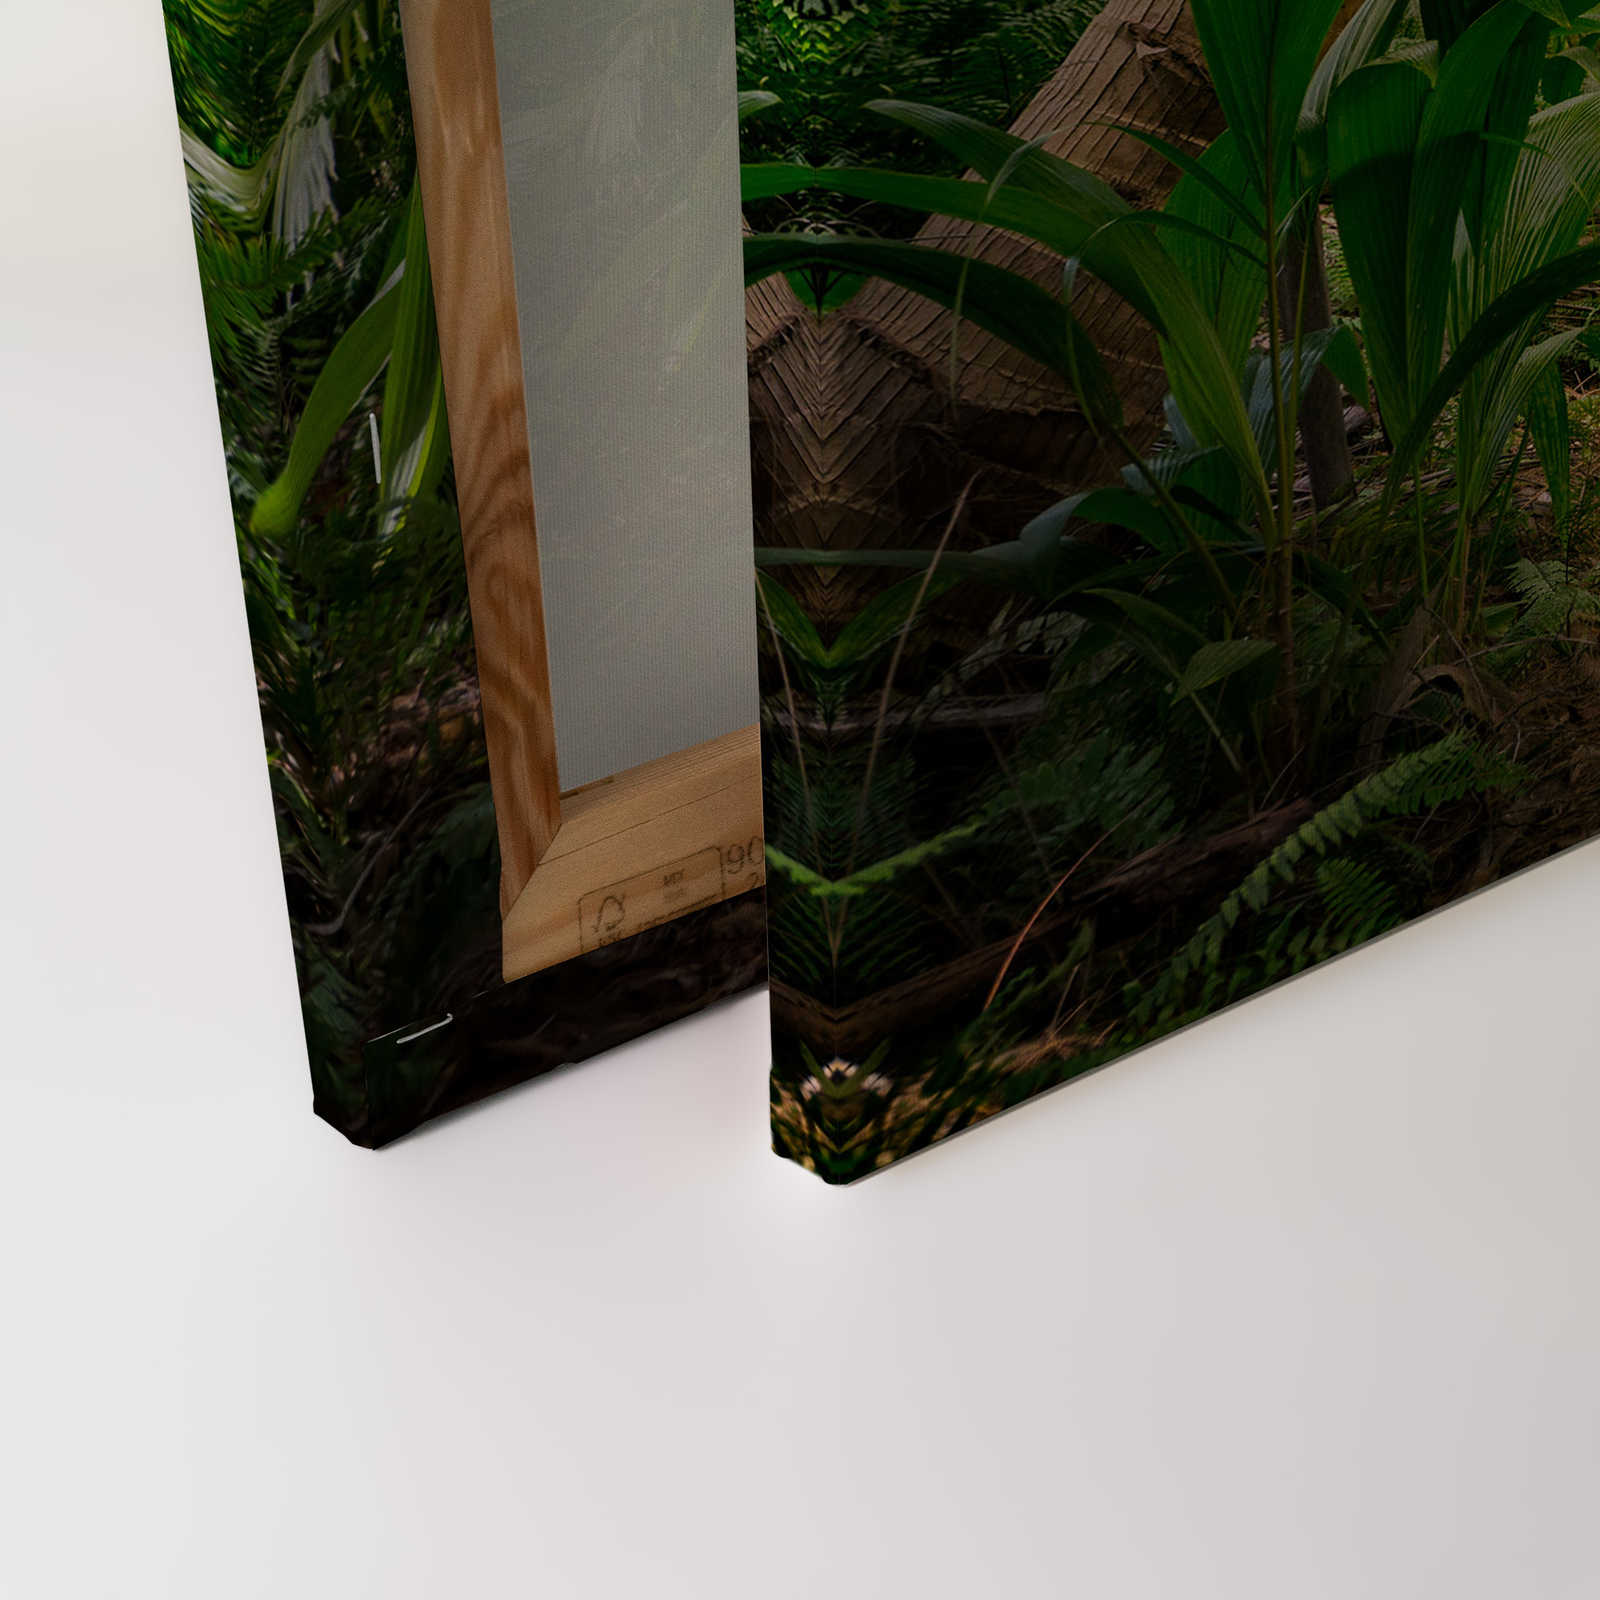             Canvas met palmbomenpad door een tropisch landschap - 0,90 m x 0,60 m
        